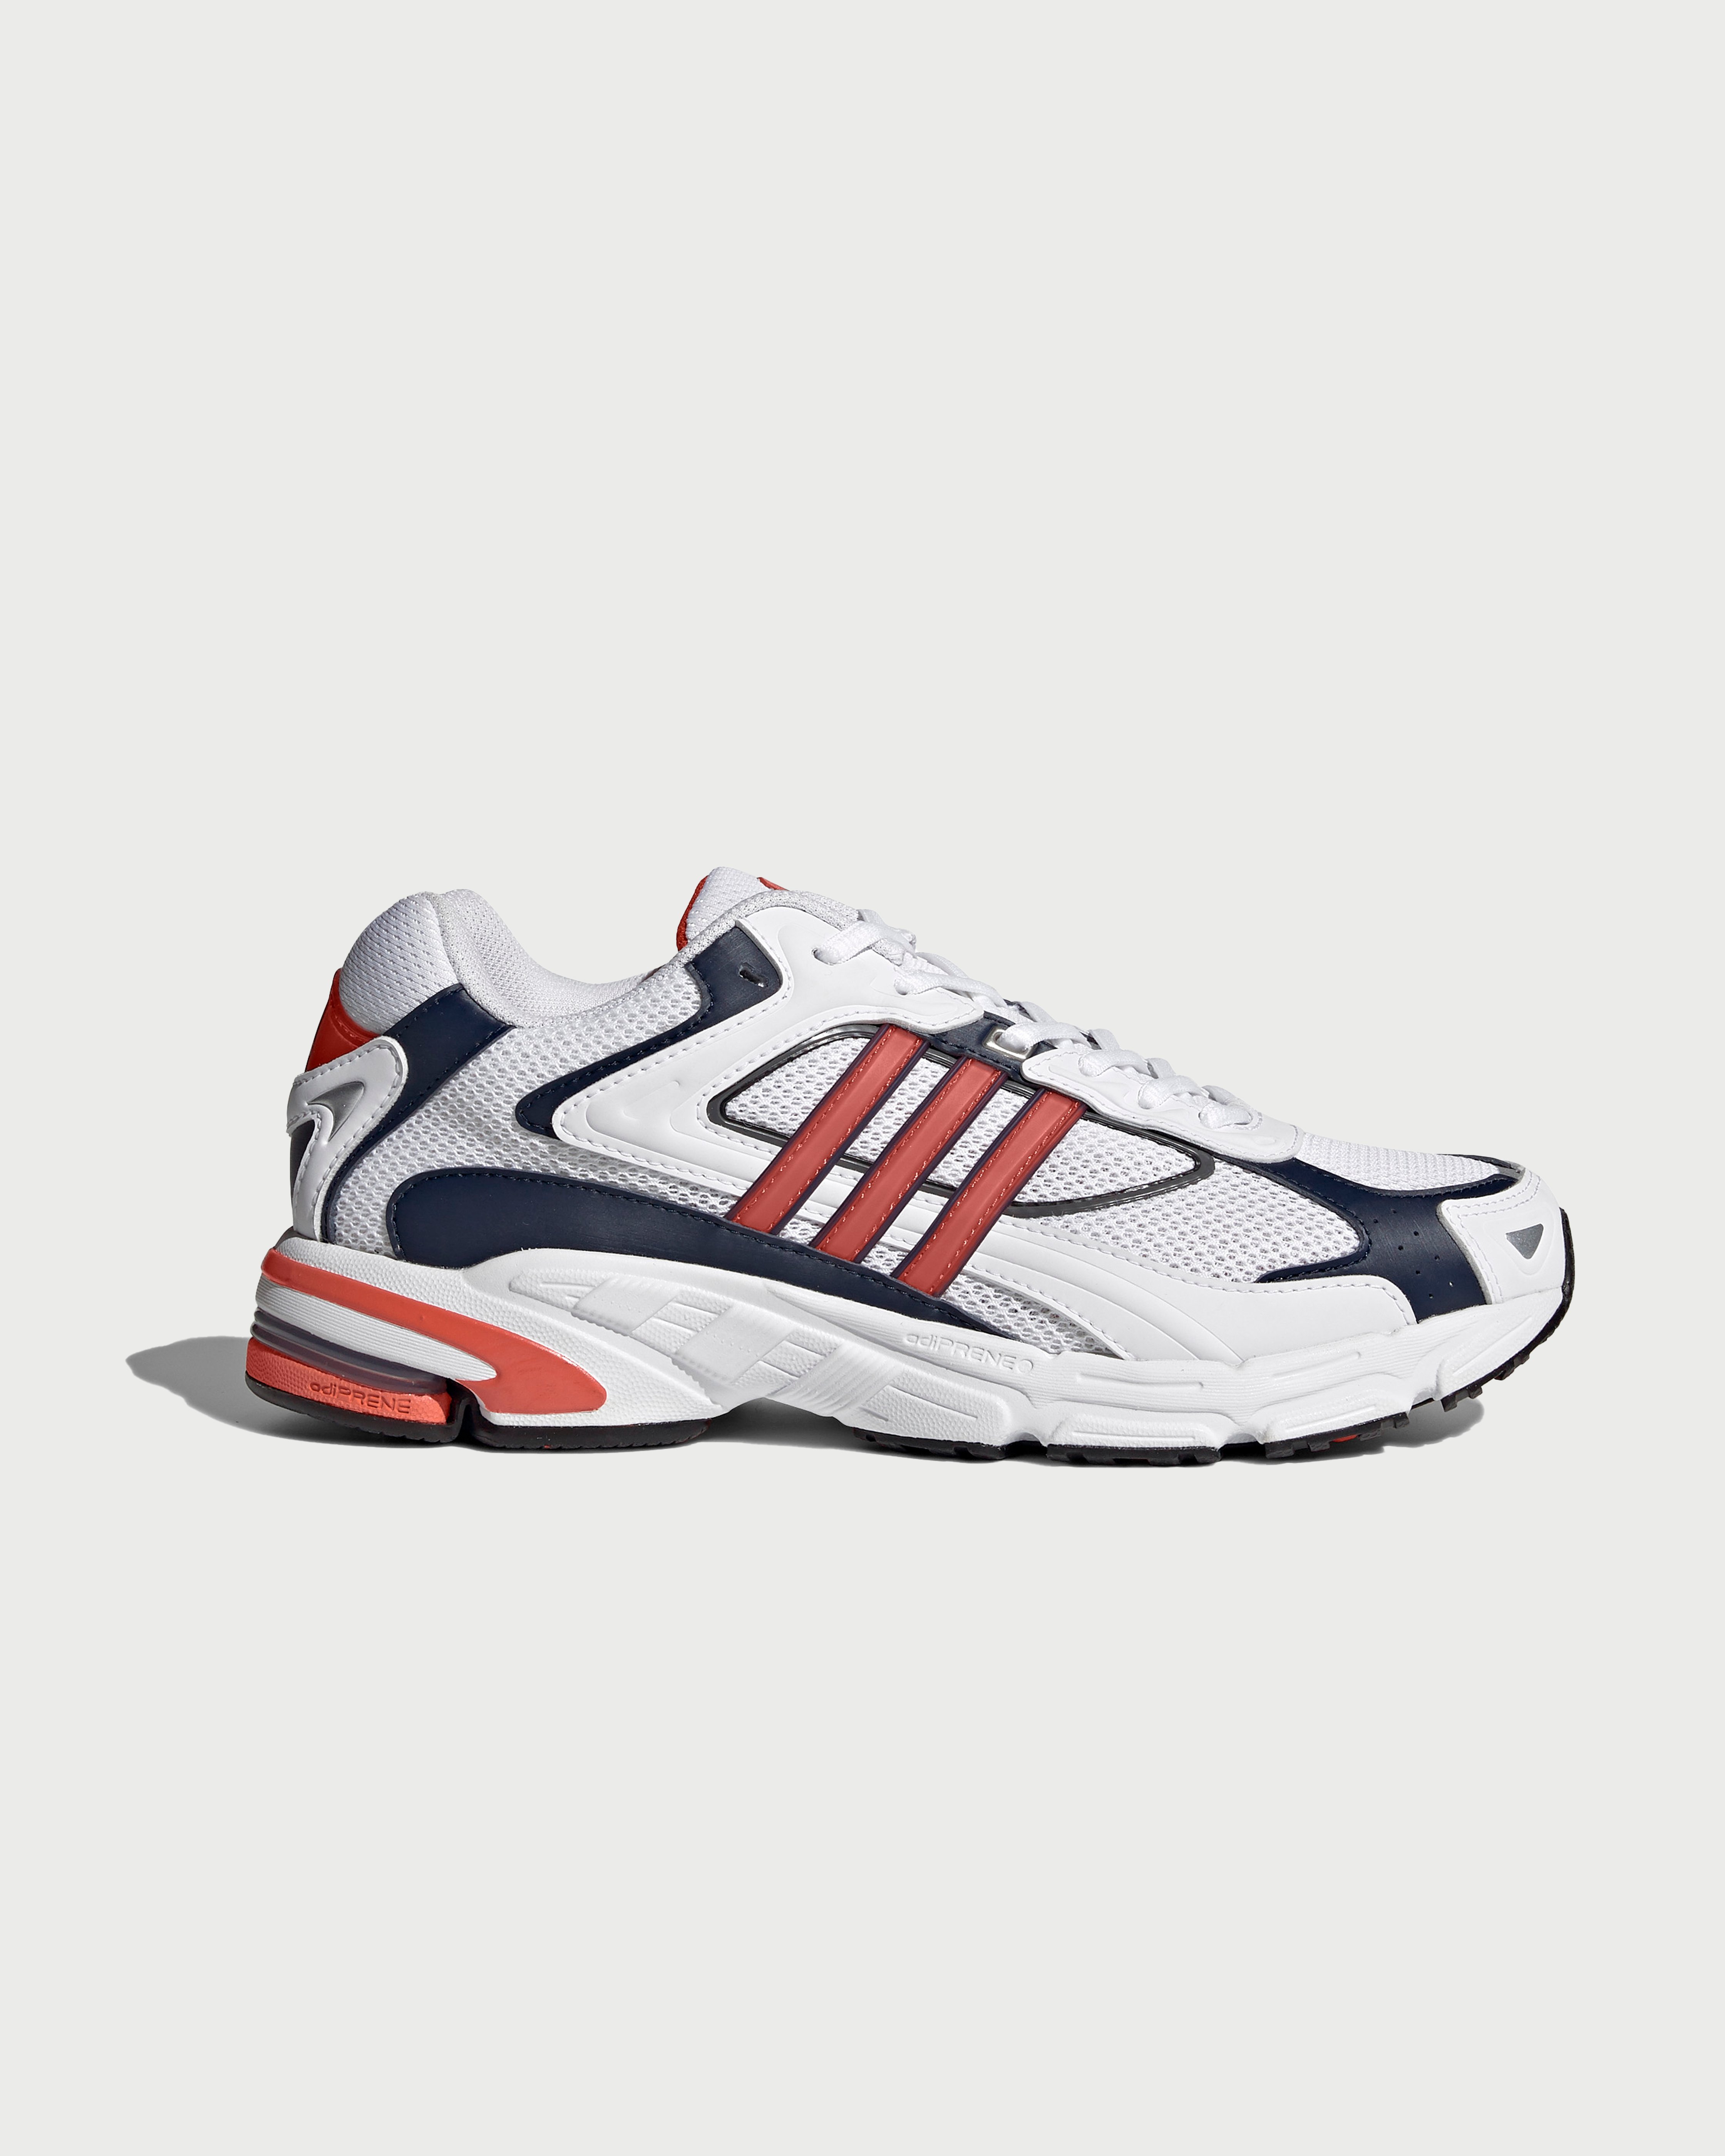 Adidas - Response CL White/Orange - Footwear - White - Image 1